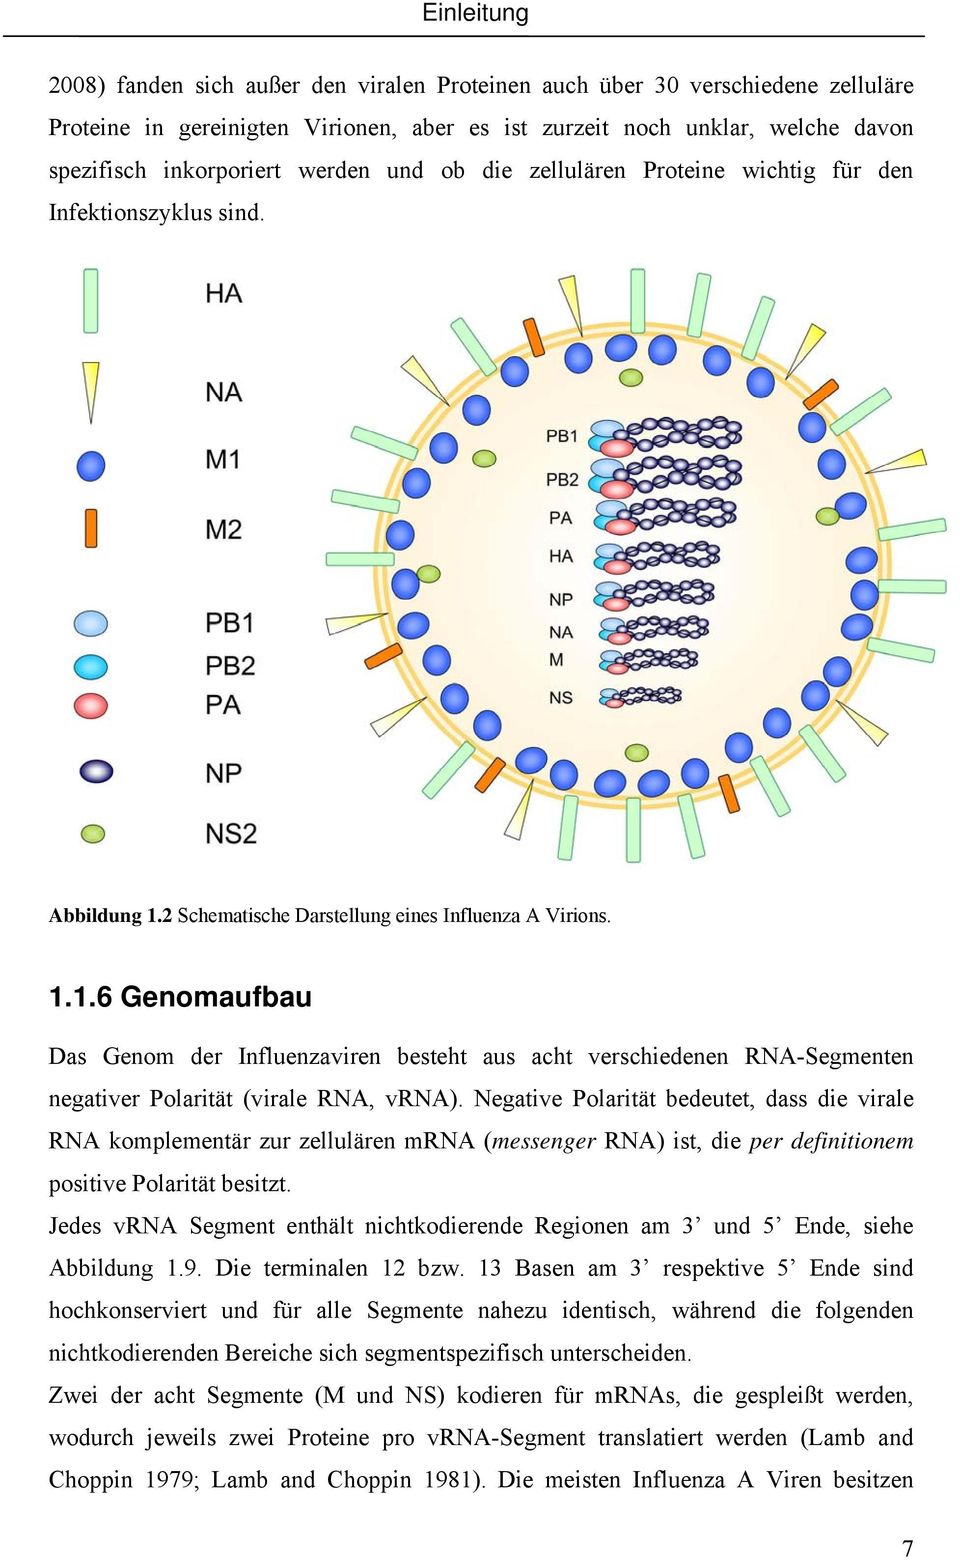 2 Schematische Darstellung eines Influenza A Virions. 1.1.6 Genomaufbau Das Genom der Influenzaviren besteht aus acht verschiedenen RNA-Segmenten negativer Polarität (virale RNA, vrna).